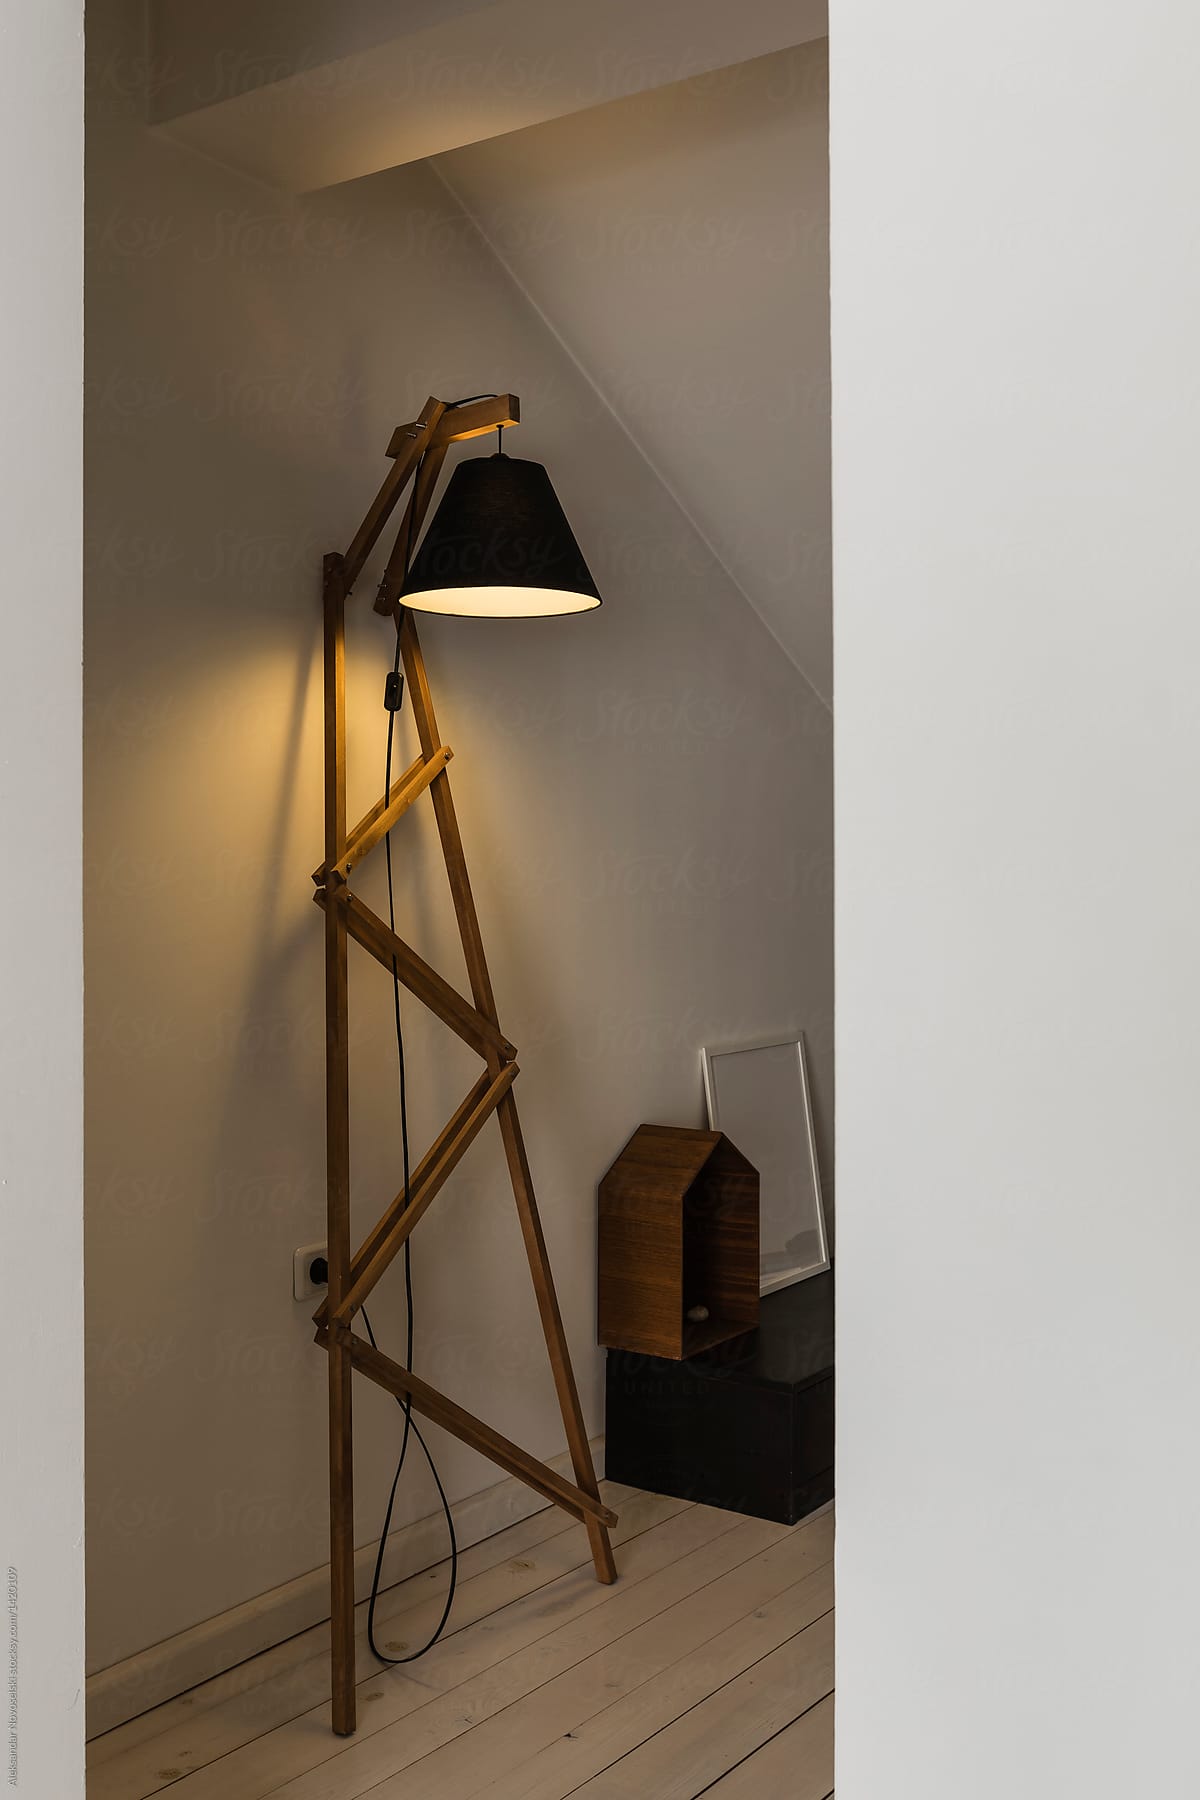 Wooden lamp in modern interior